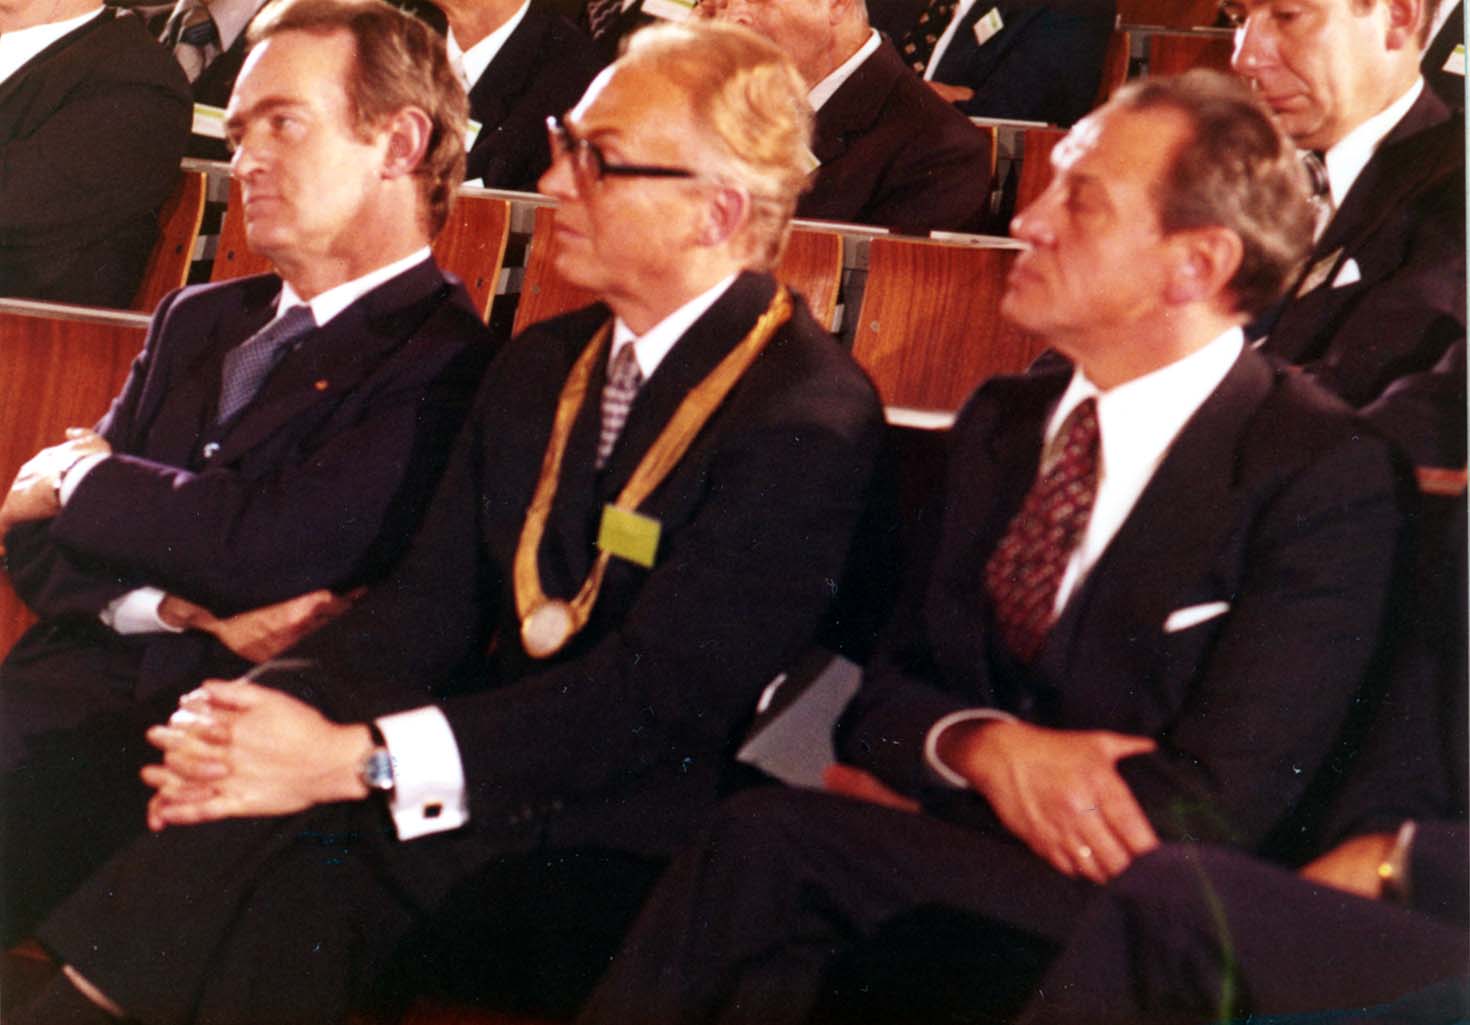 Fraunhofer-Jahrestagung 1977 - Ministerpräsident Rau, Fraunhofer-Präsident Dr. Keller, Bürgermeister Hönig (v.l.n.r.)